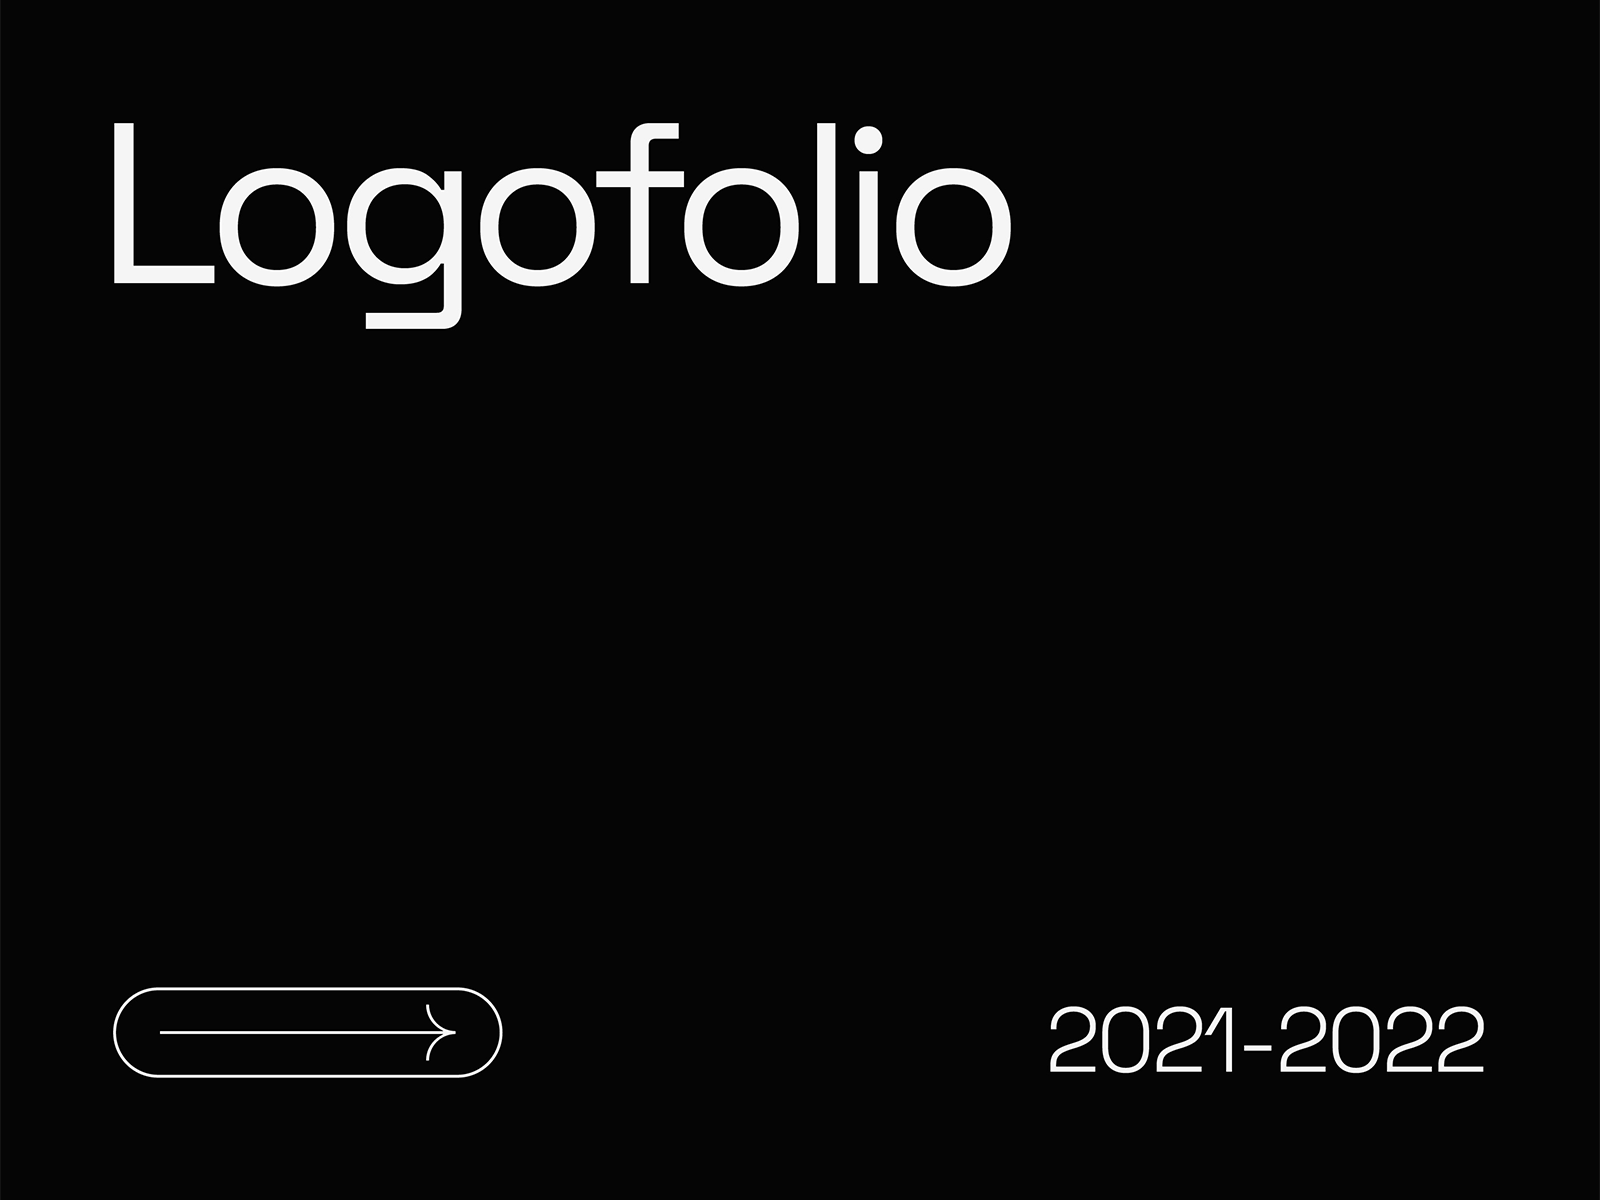 logofolio hamdi designs 00 cover